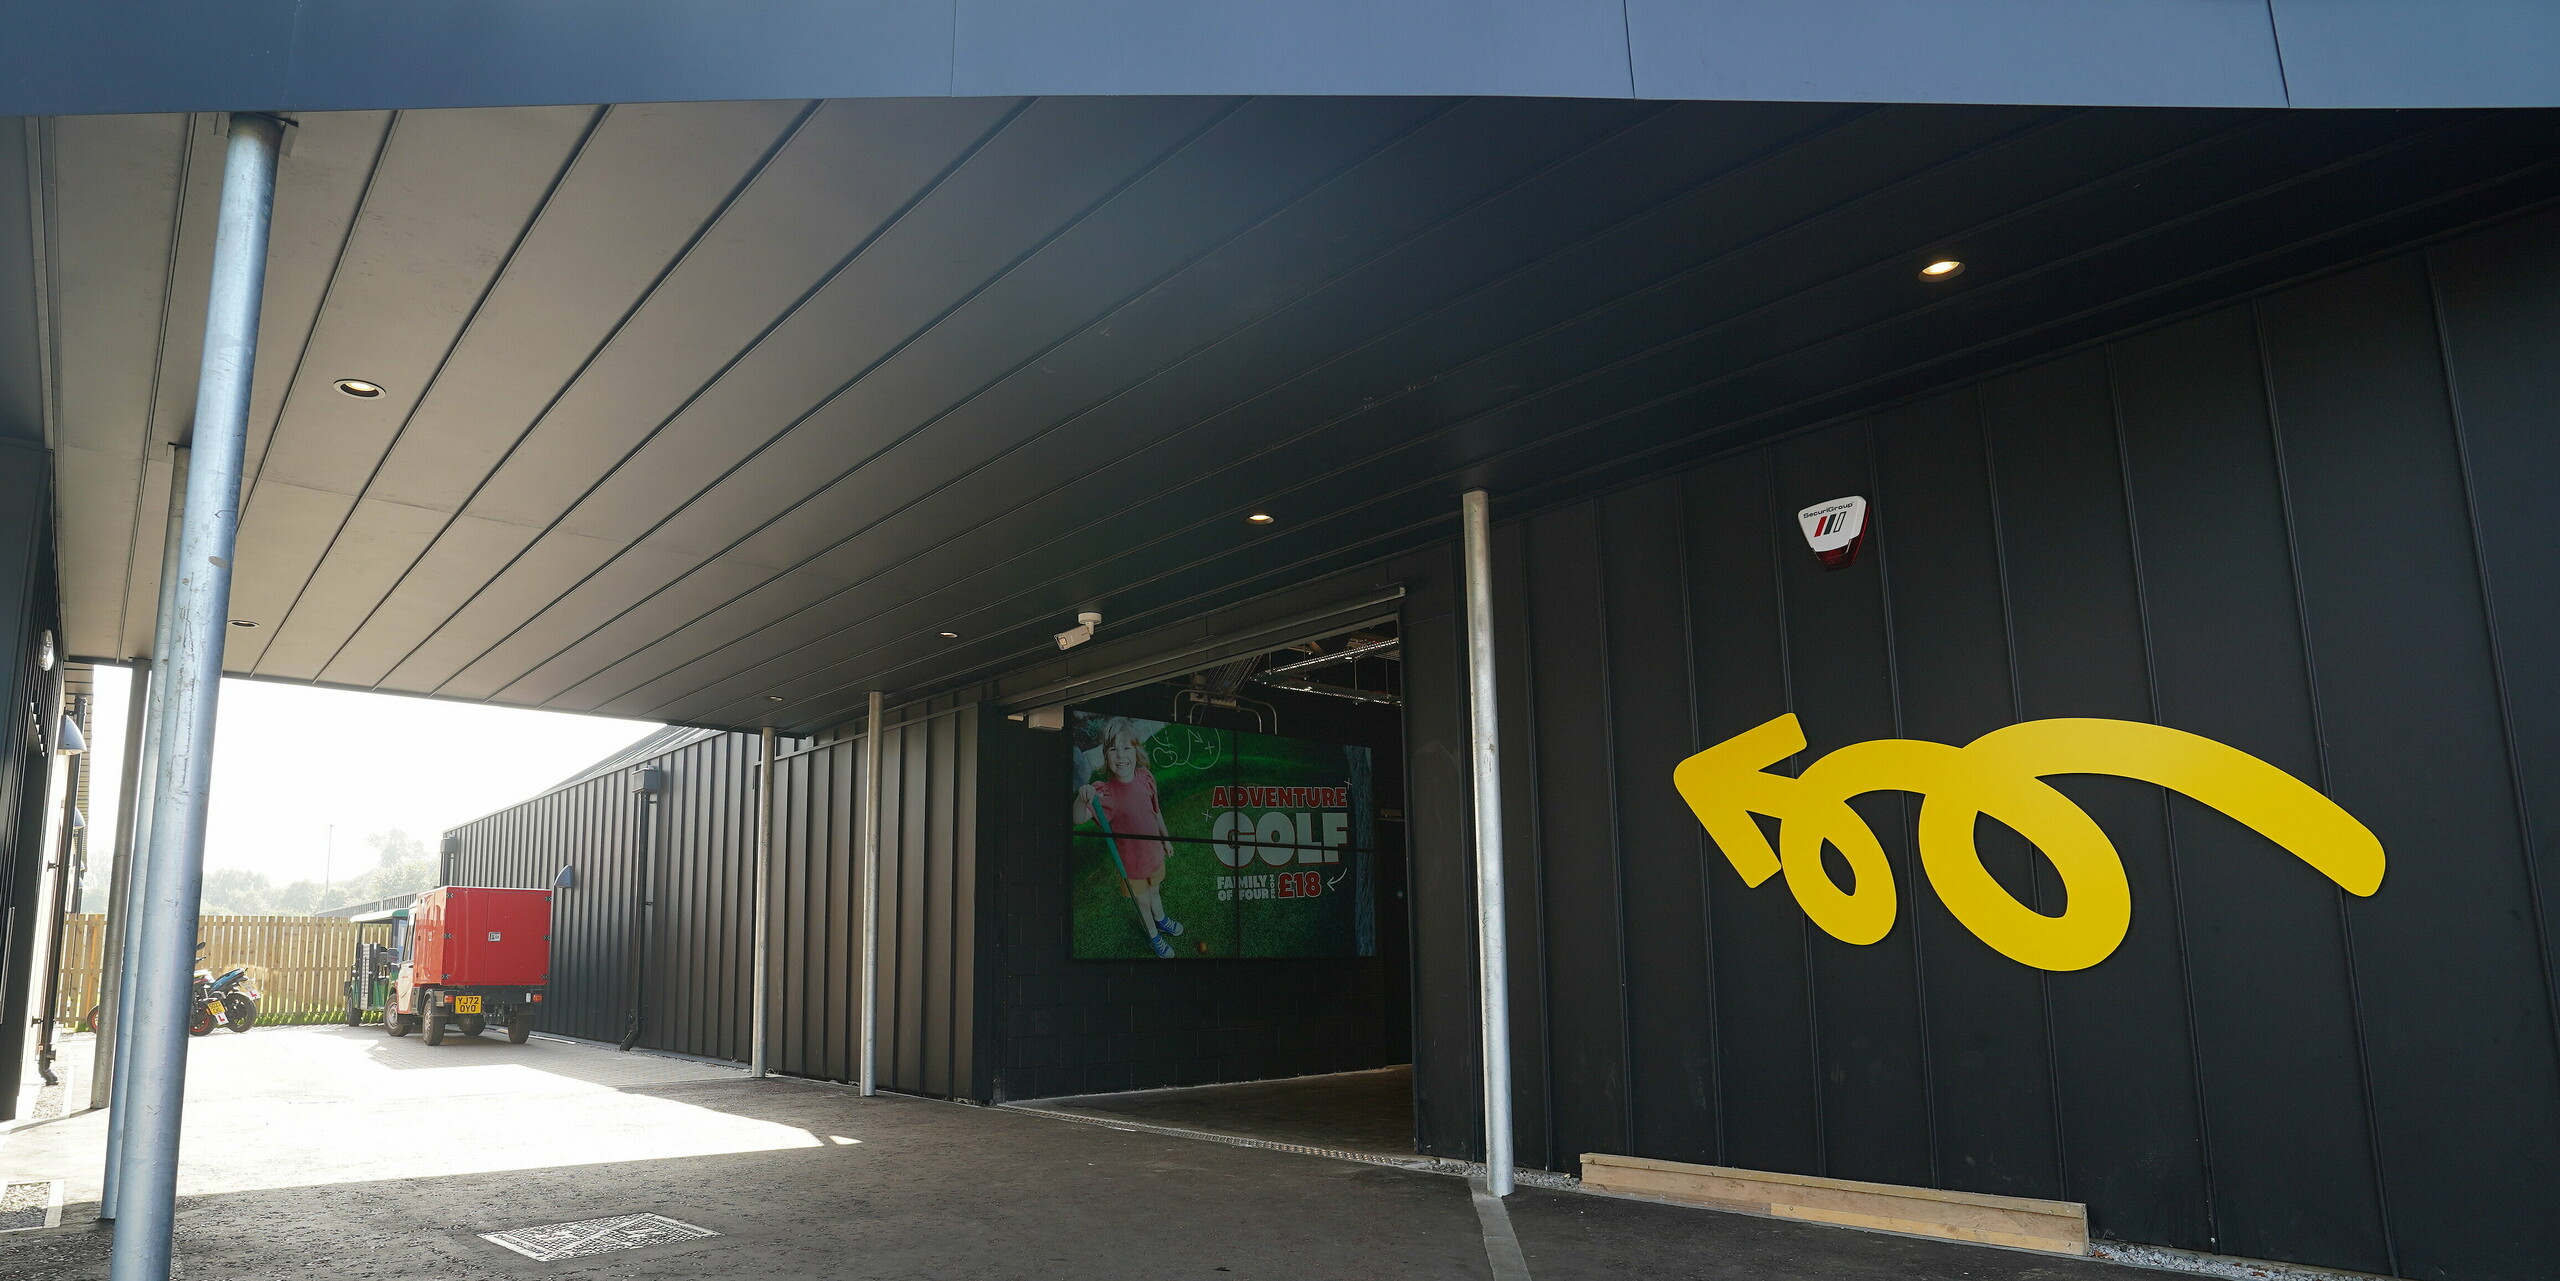 Eingangsbereich der 'Golf it!' Golfanlage in Glasgow, Schottland, mit einem modern gestalteten Vordach aus PREFALZ in P.10 Schwarz. Die Aluminium-Elemente schaffen eine einladende Atmosphäre, die durch einen geschwungenen Pfeil in Gelb an der Wand und ein großflächiges Eingangsschild akzentuiert wird. Diese Details zeigen, wie PREFALZ ästhetisch und funktionell in unterschiedlichen Gebäudebereichen integriert werden kann.